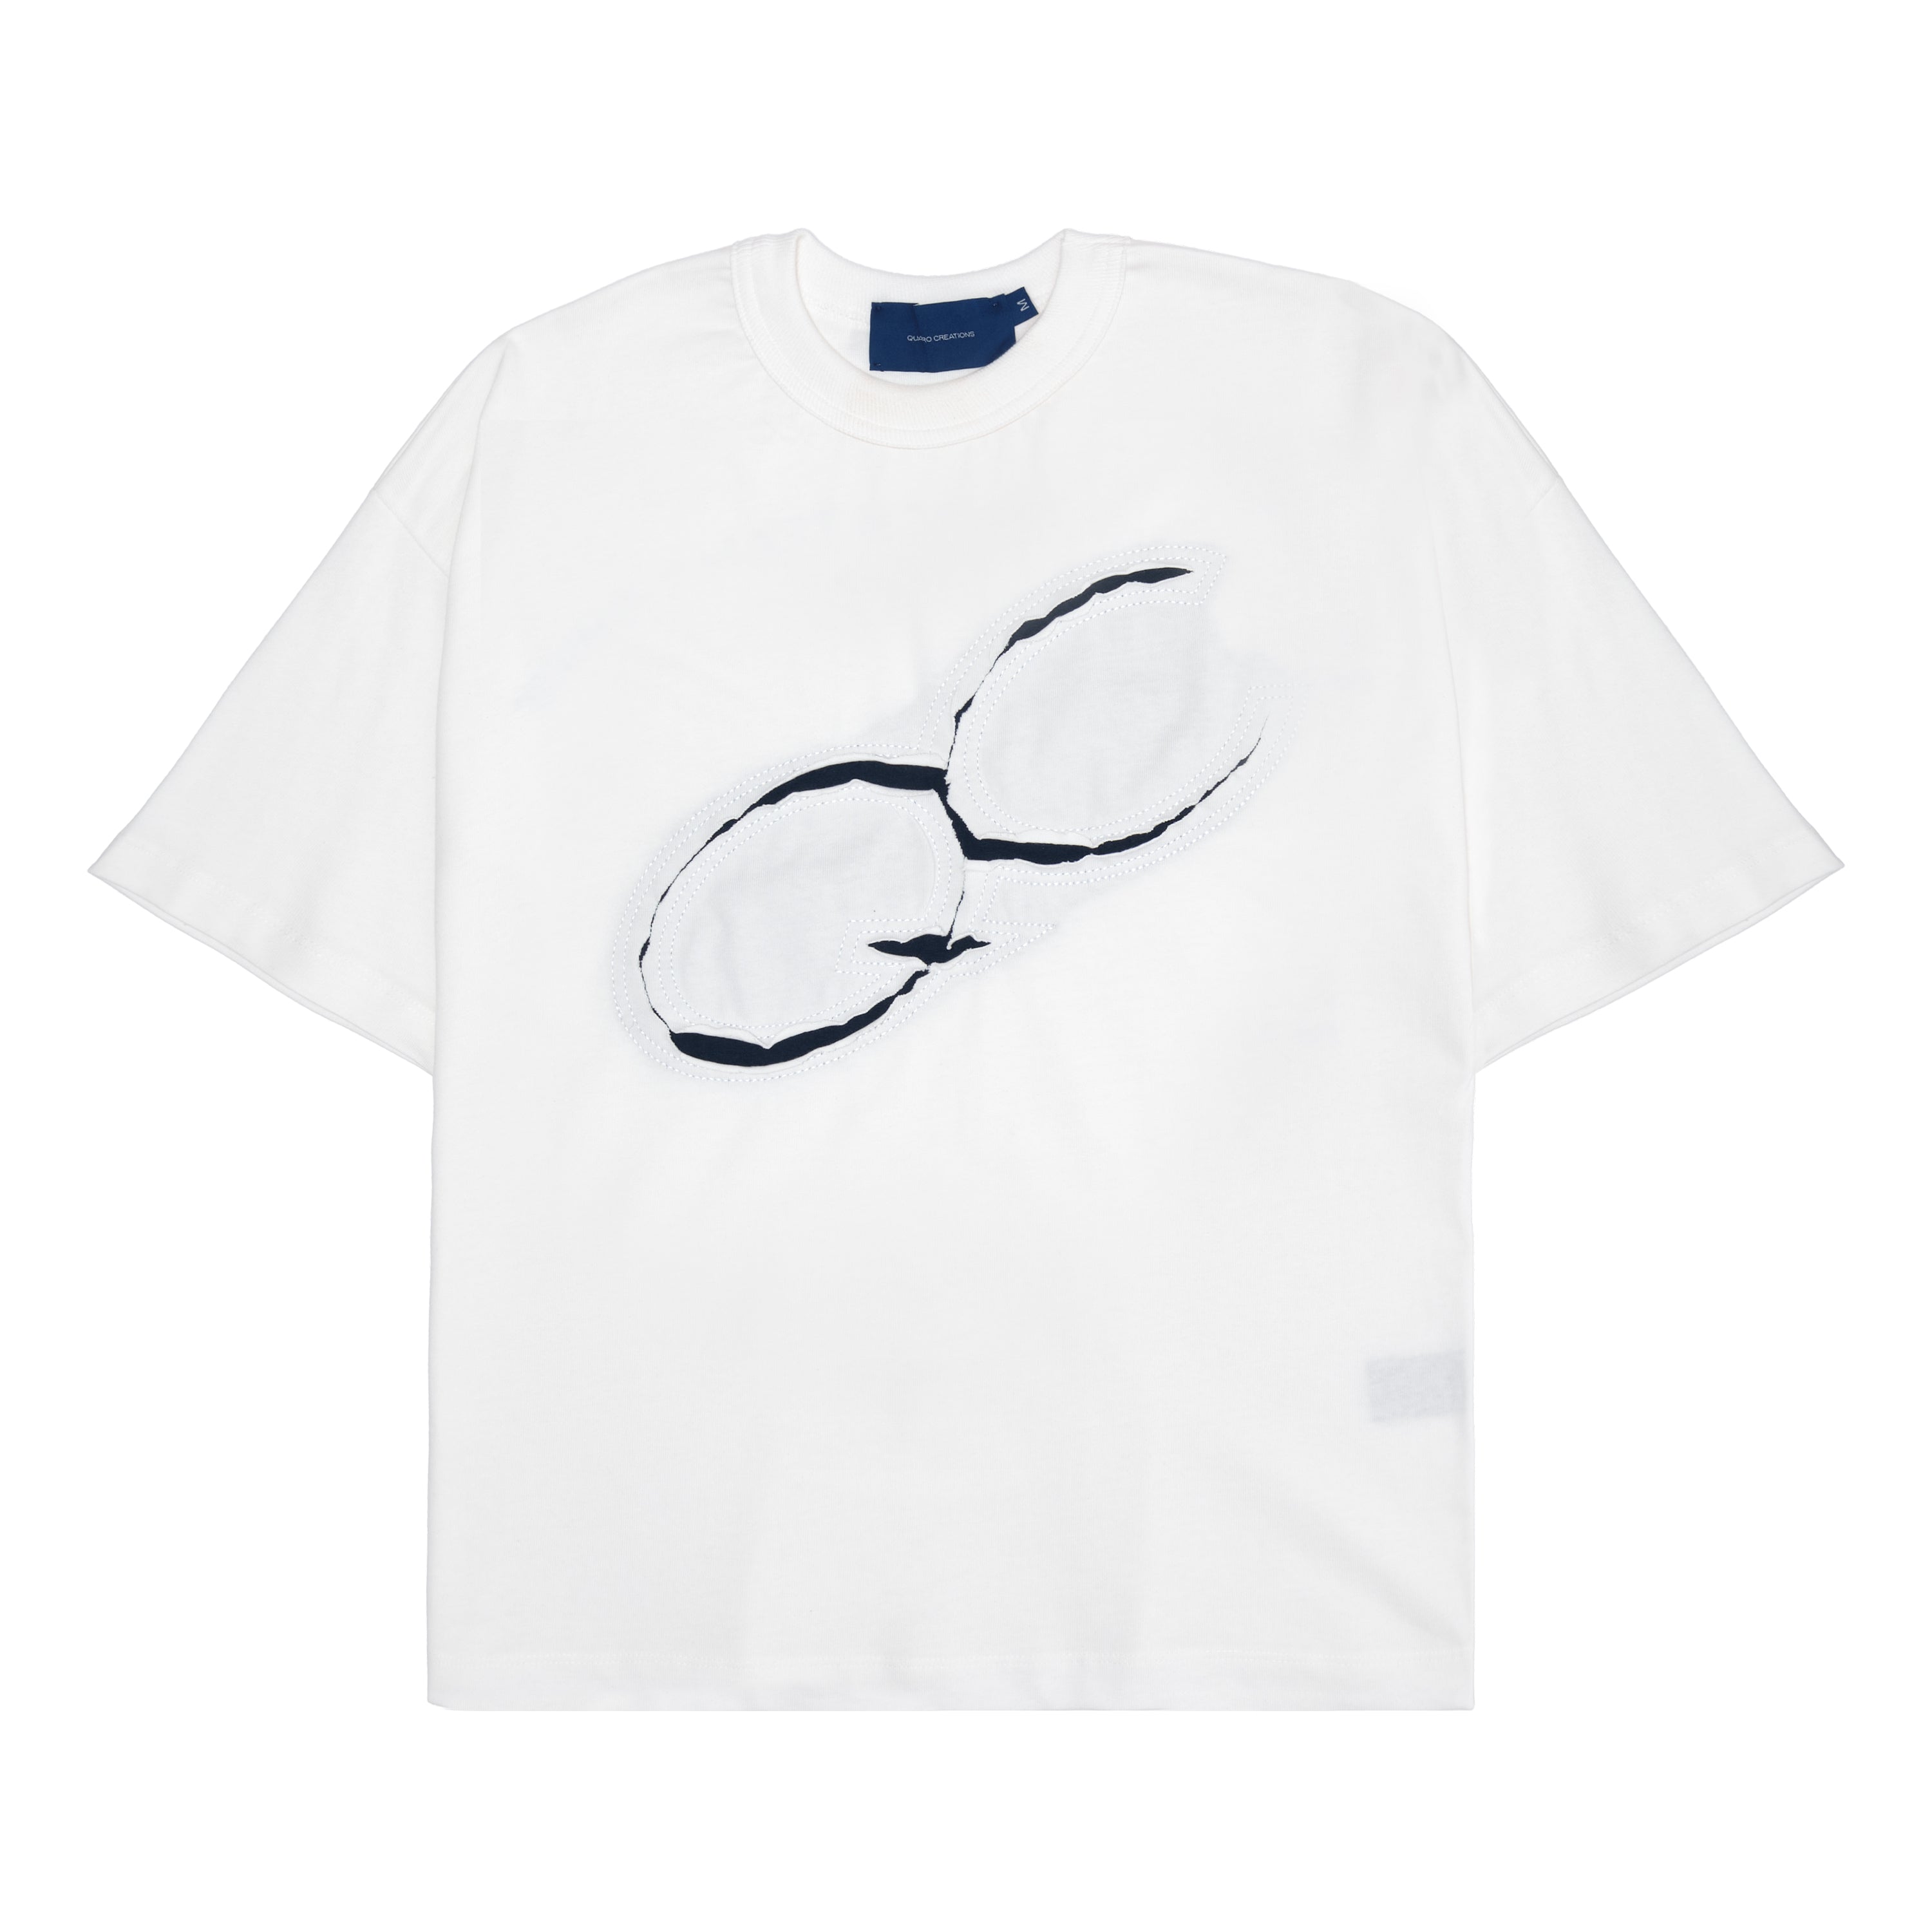 Camiseta Quadro Creations Understitch Off White